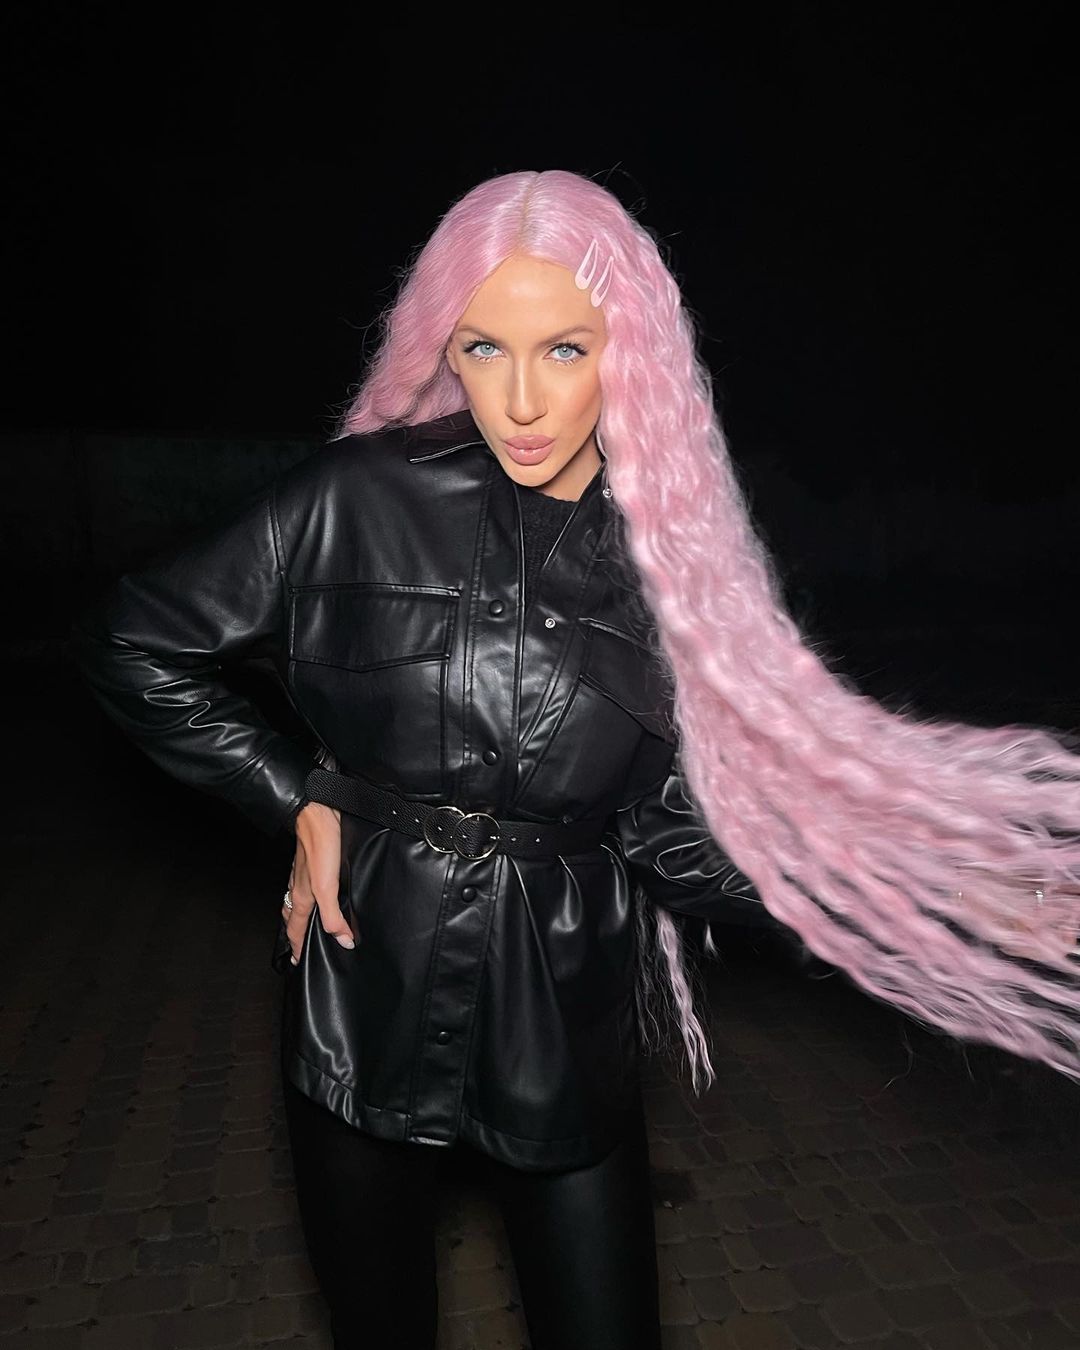 Барбі твоєї мрії: Леся Нікітюк з рожевим волоссям вразила новим образом